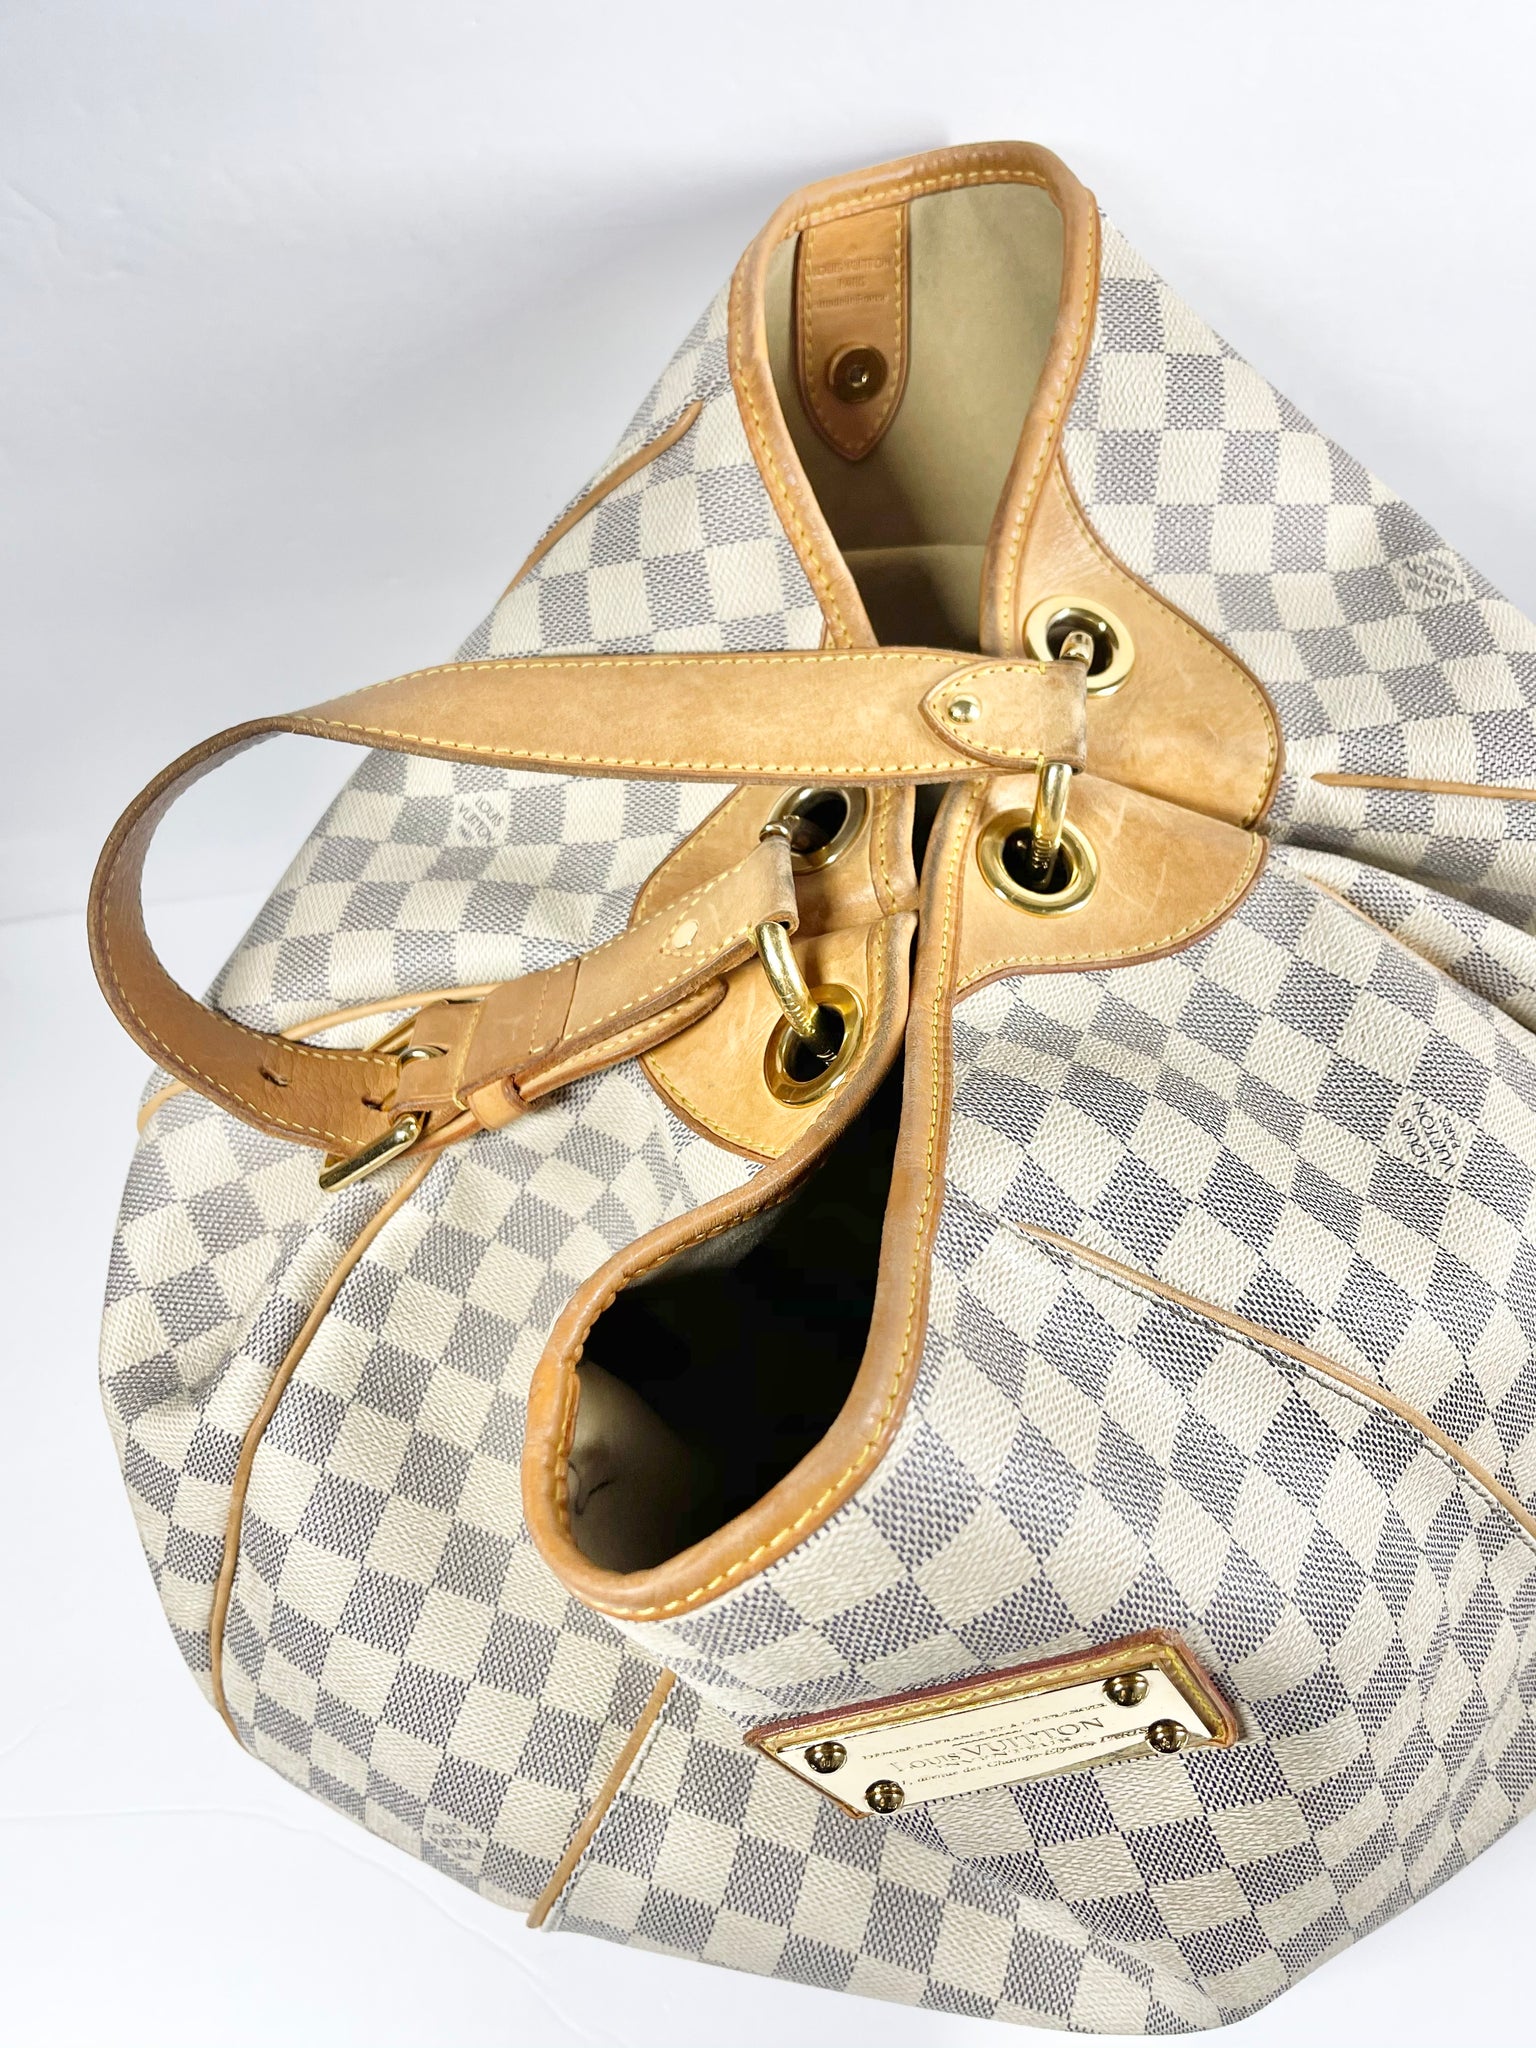 Authentic Louis Vuitton Damier Azur Galliera GM Shoulder Bag